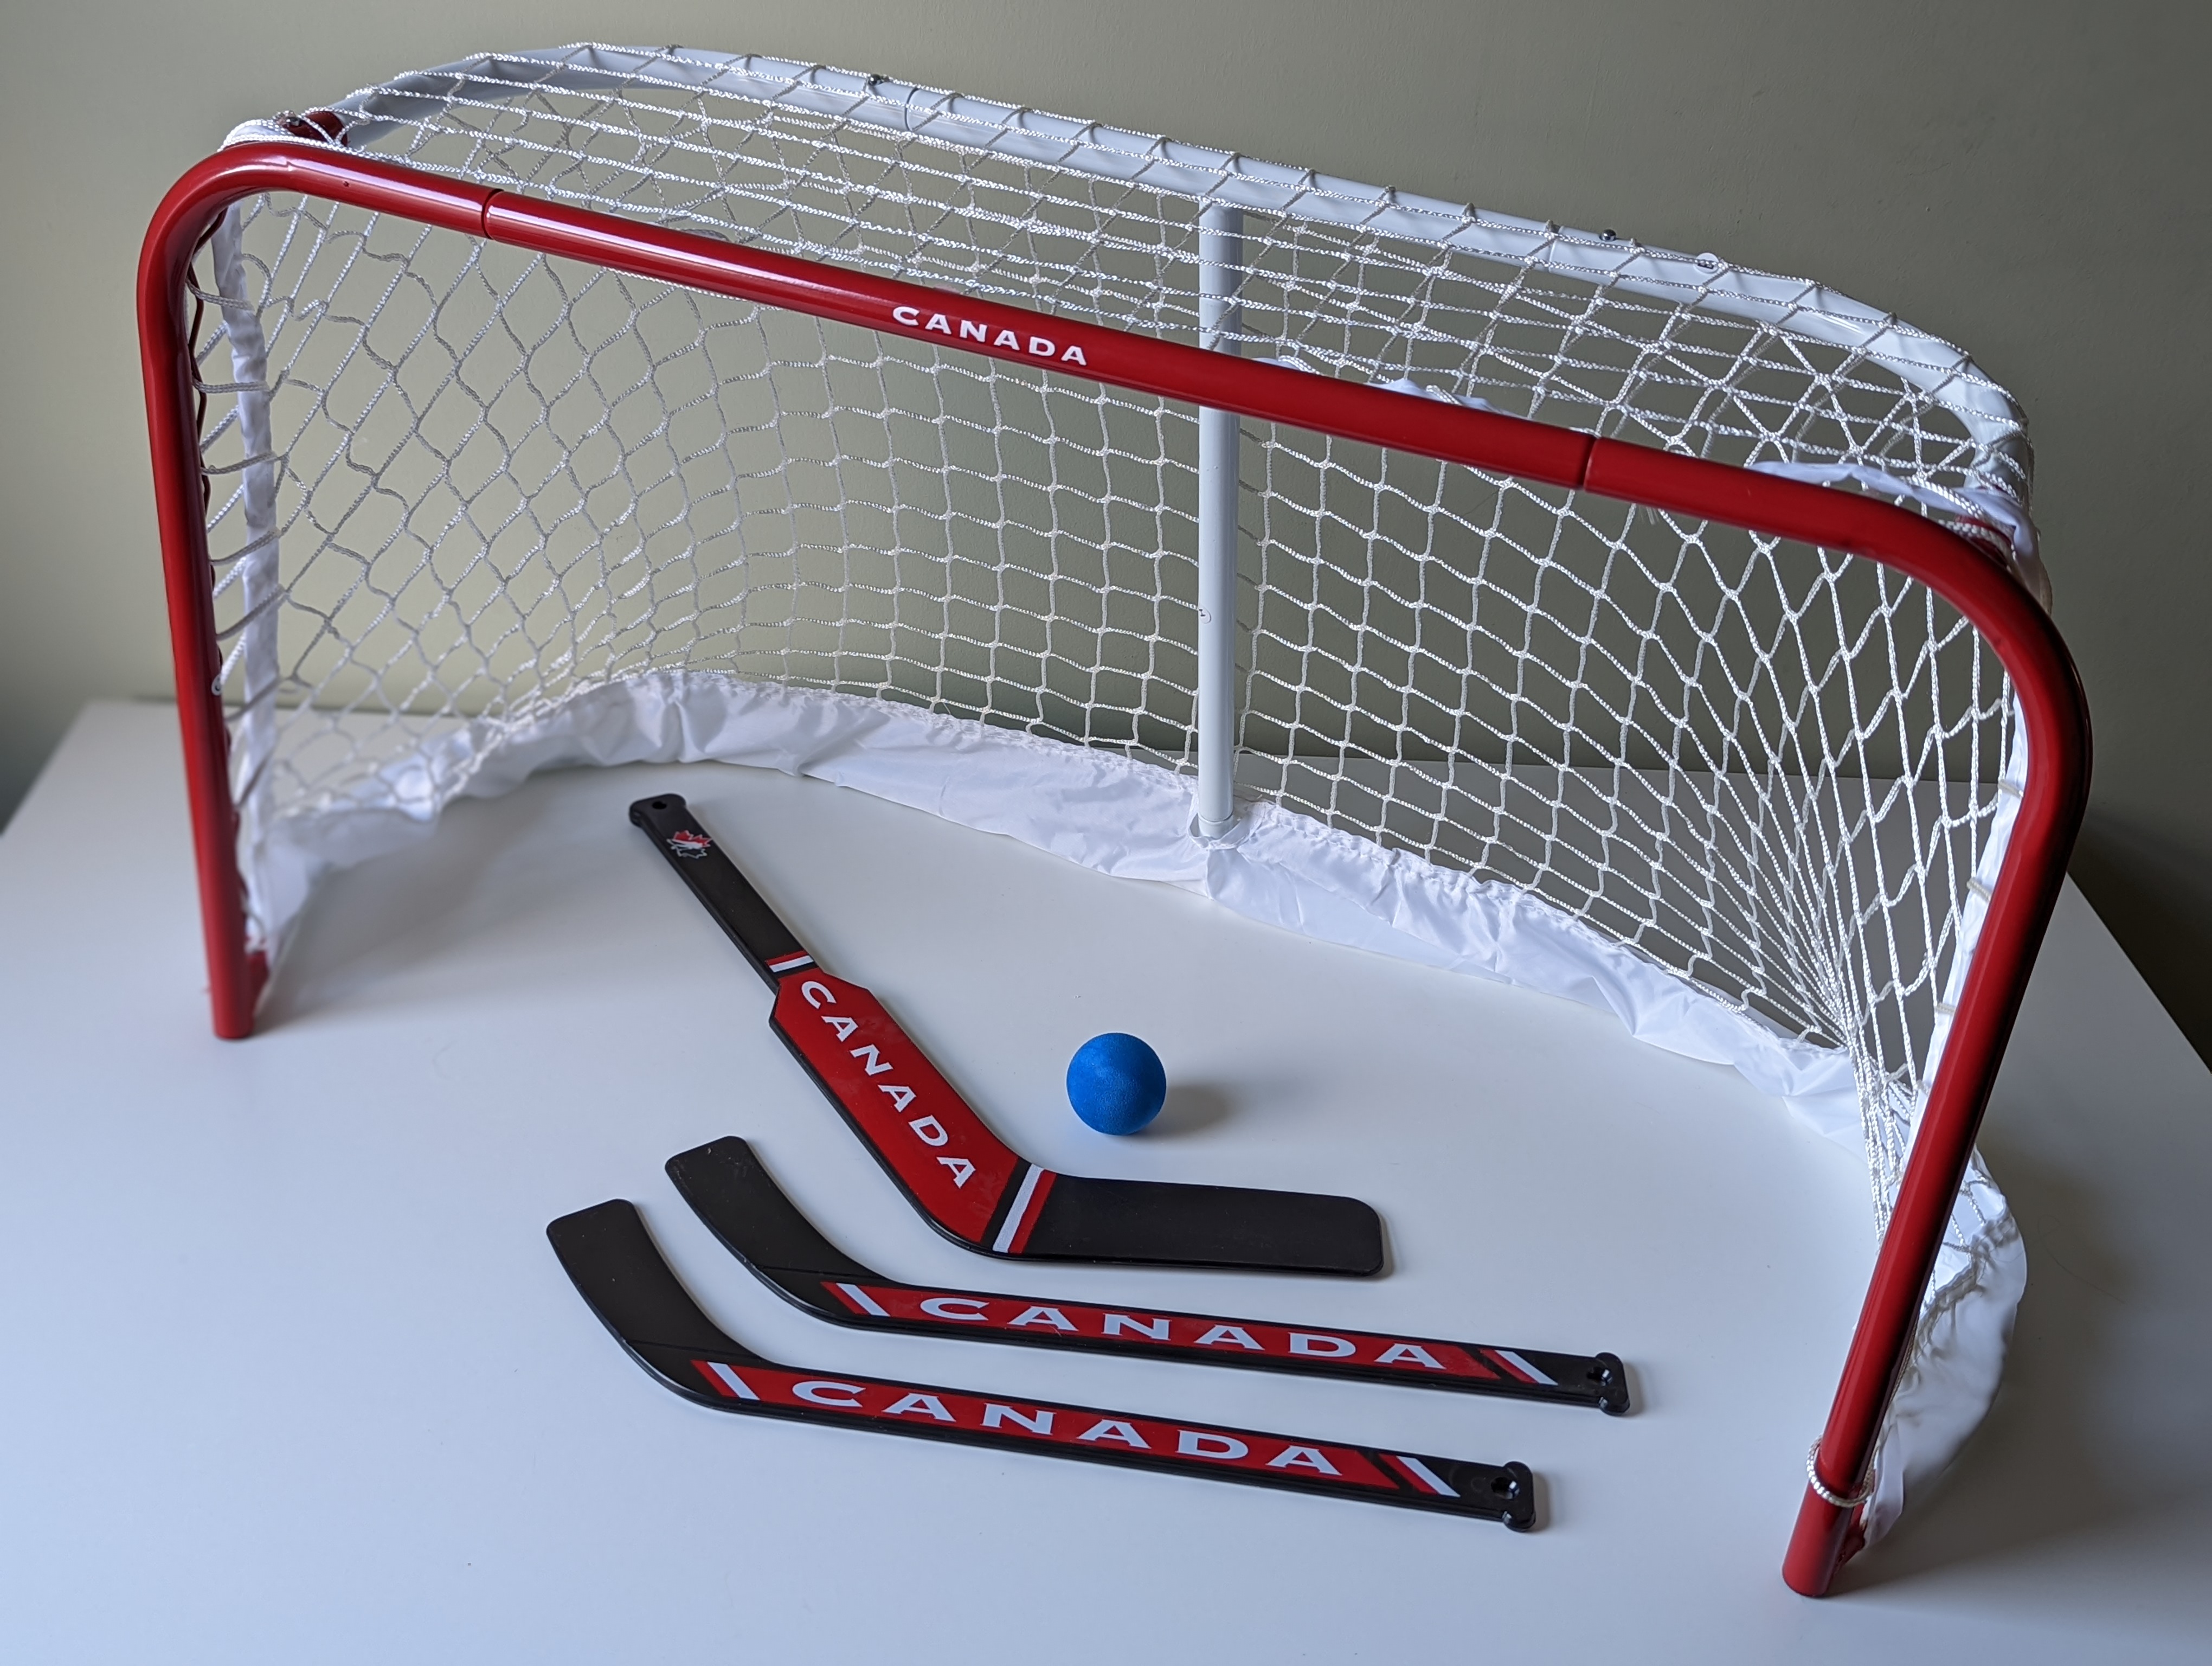 Mini hockey net with three hockey sticks and a ball